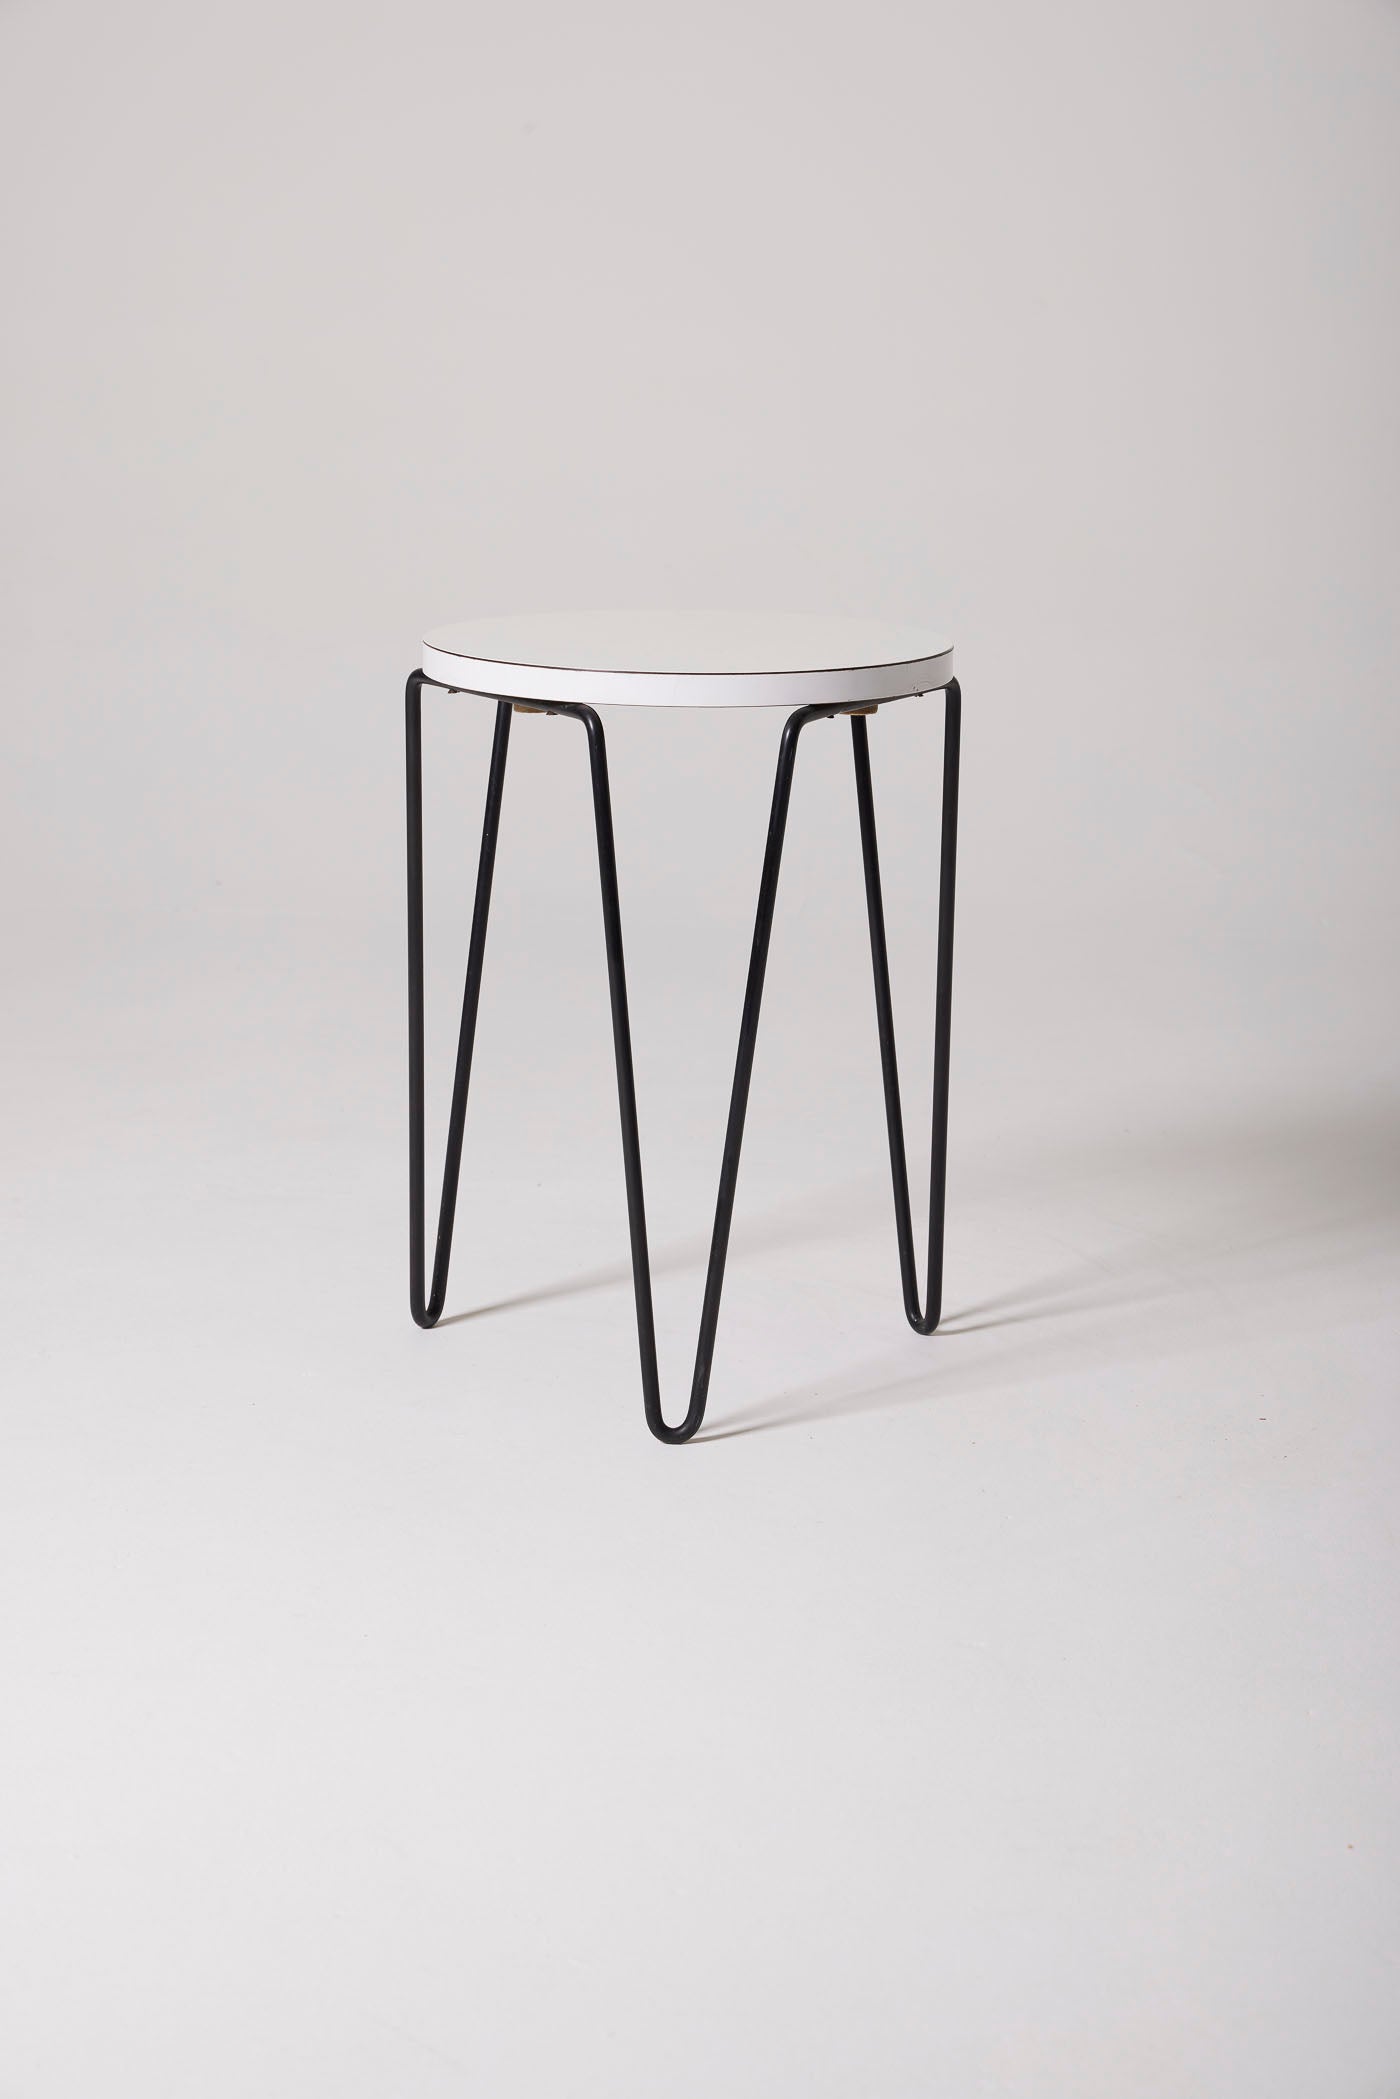 Knoll model 75 tripod stool 